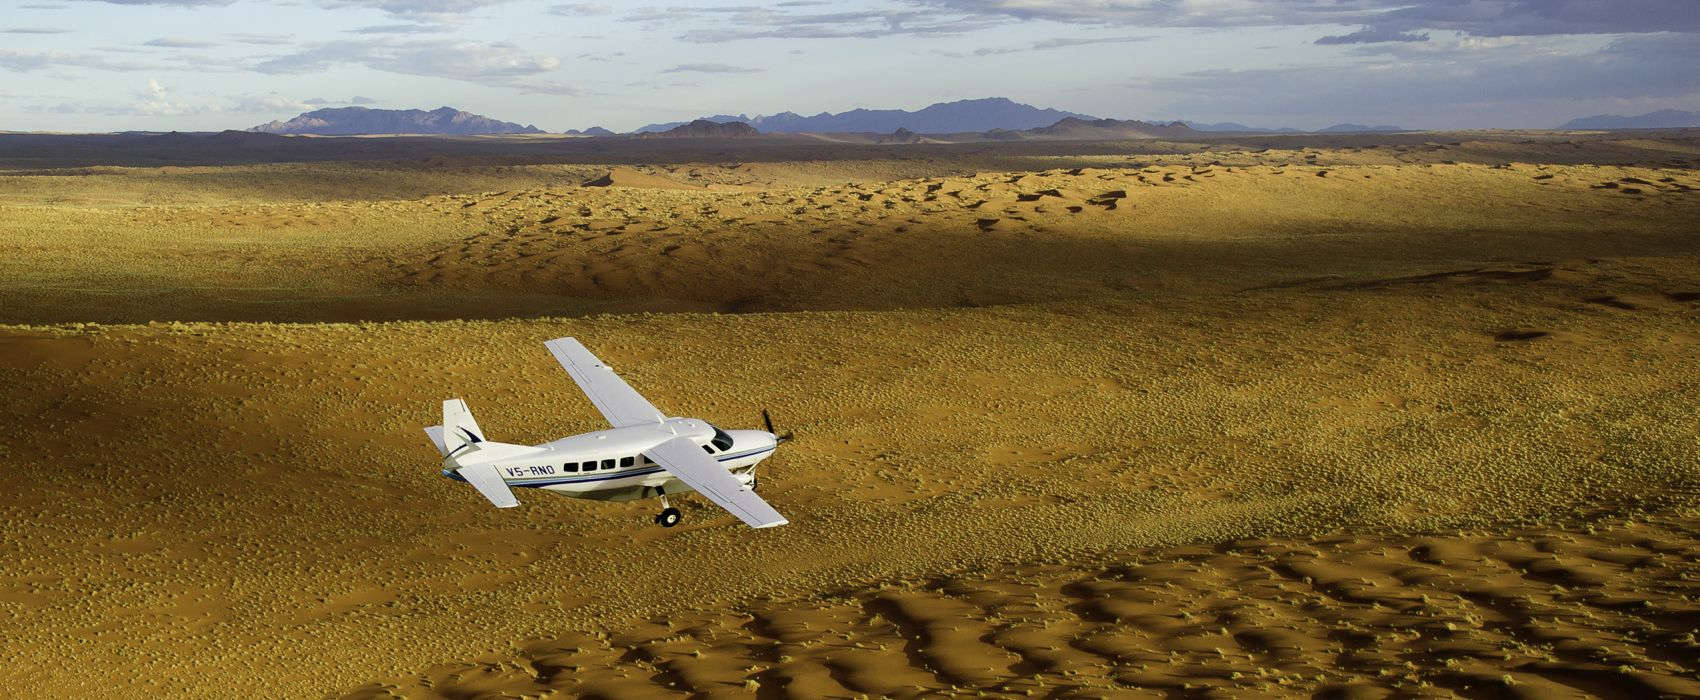 Namibia flying safaris